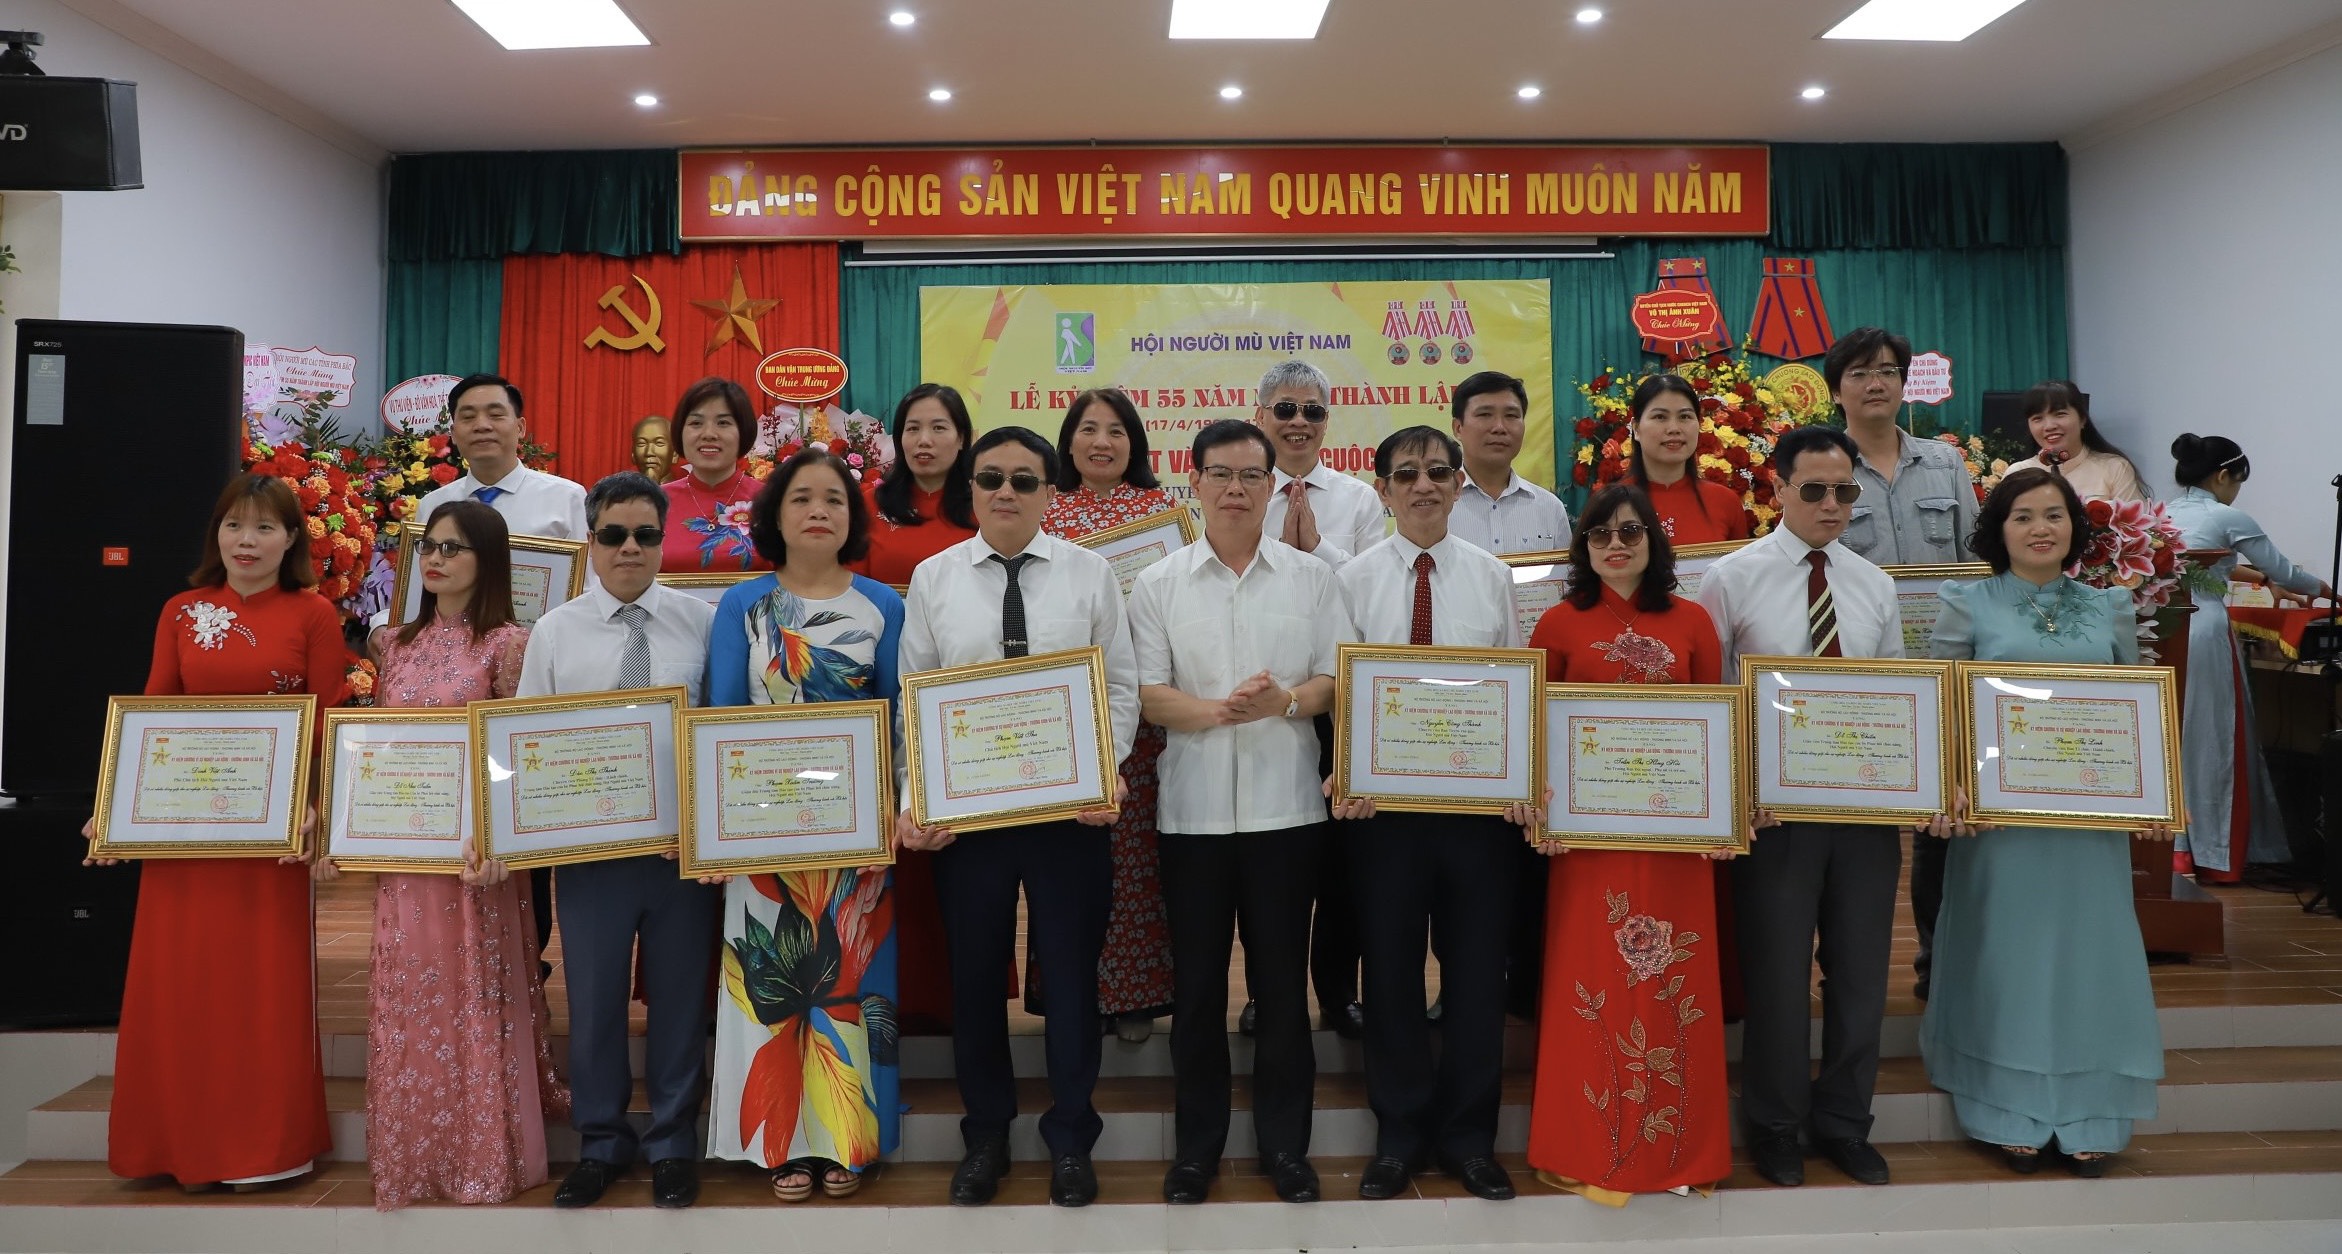 Hình ảnh: Lễ kỷ niệm 55 năm ngày thành lập Hội Người mù Việt Nam